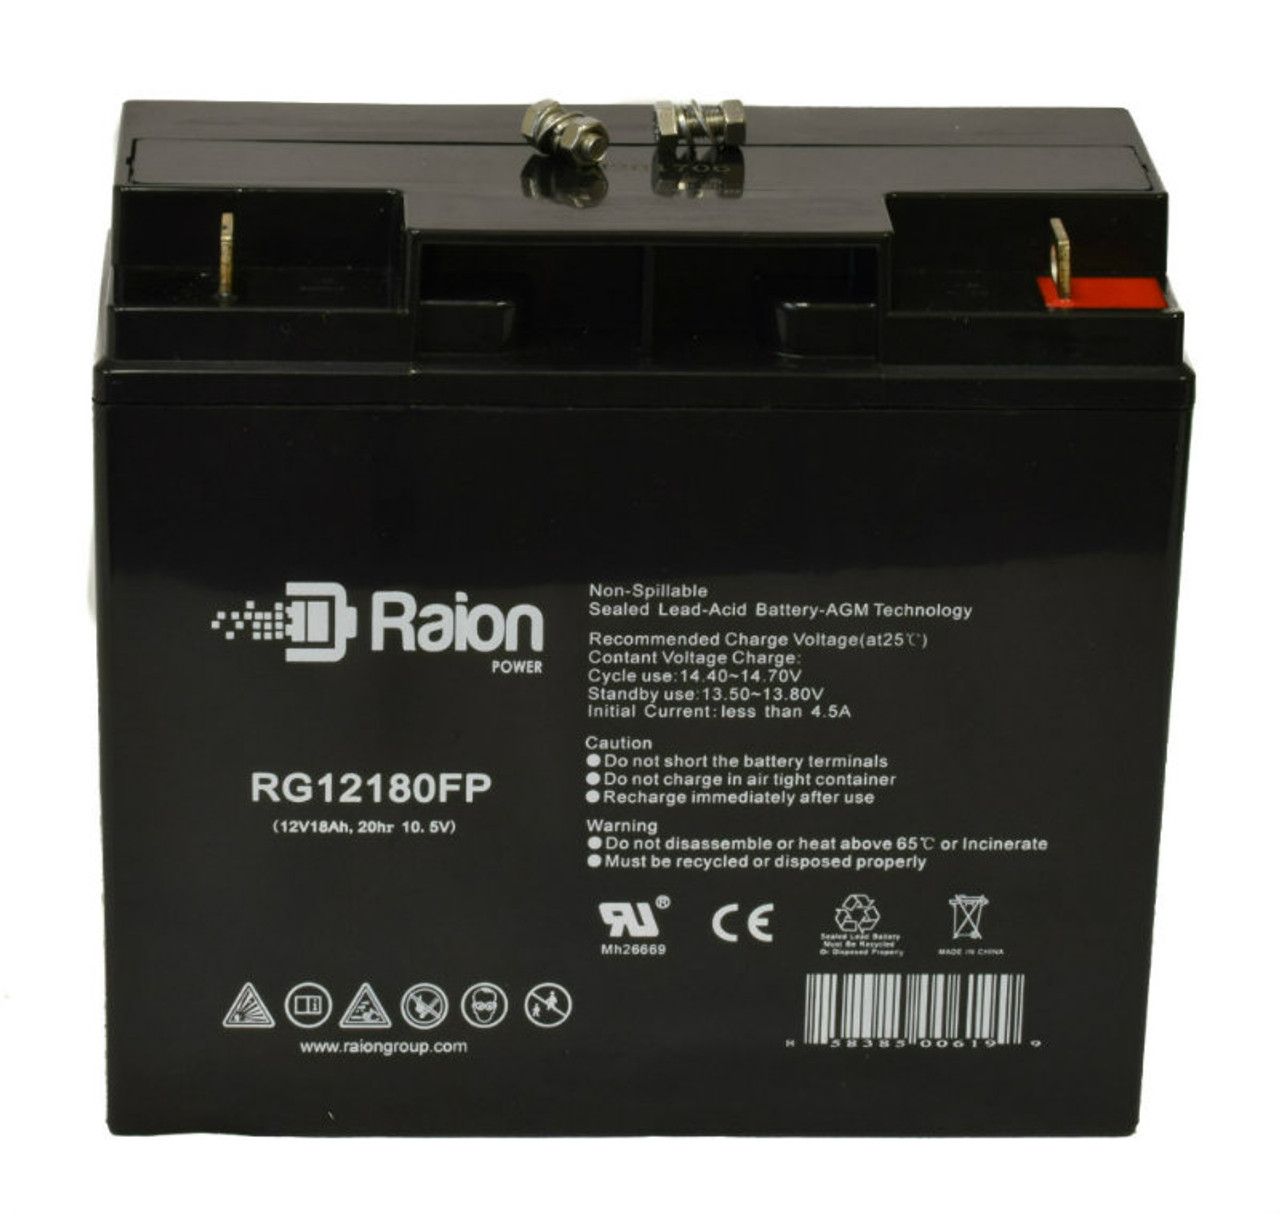 Raion Power RG12180FP 12V 18Ah Lead Acid Battery for Power Energy DC12-20